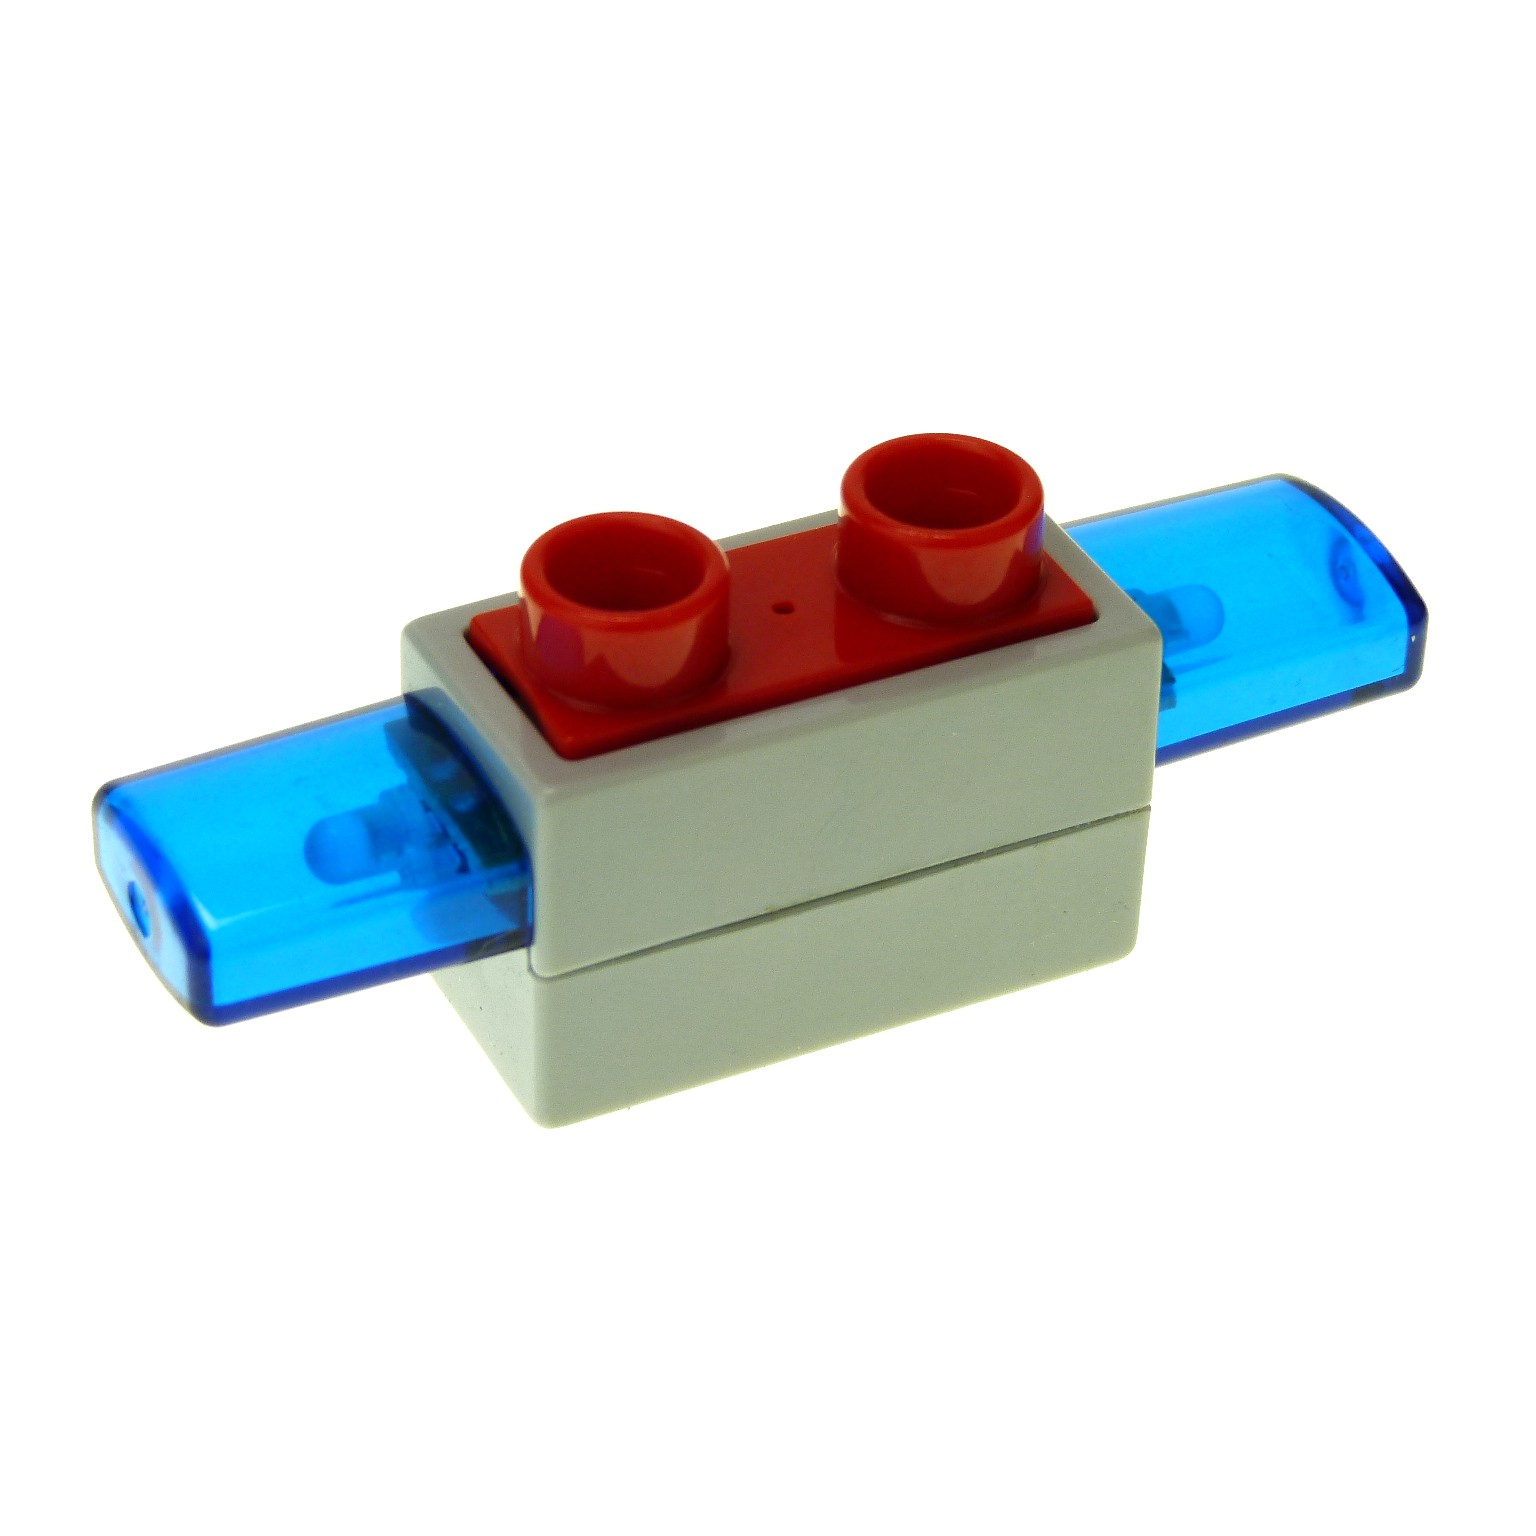 Lego Duplo Sirene Blinklicht Blaulicht mit Licht und Sound Neu #545 